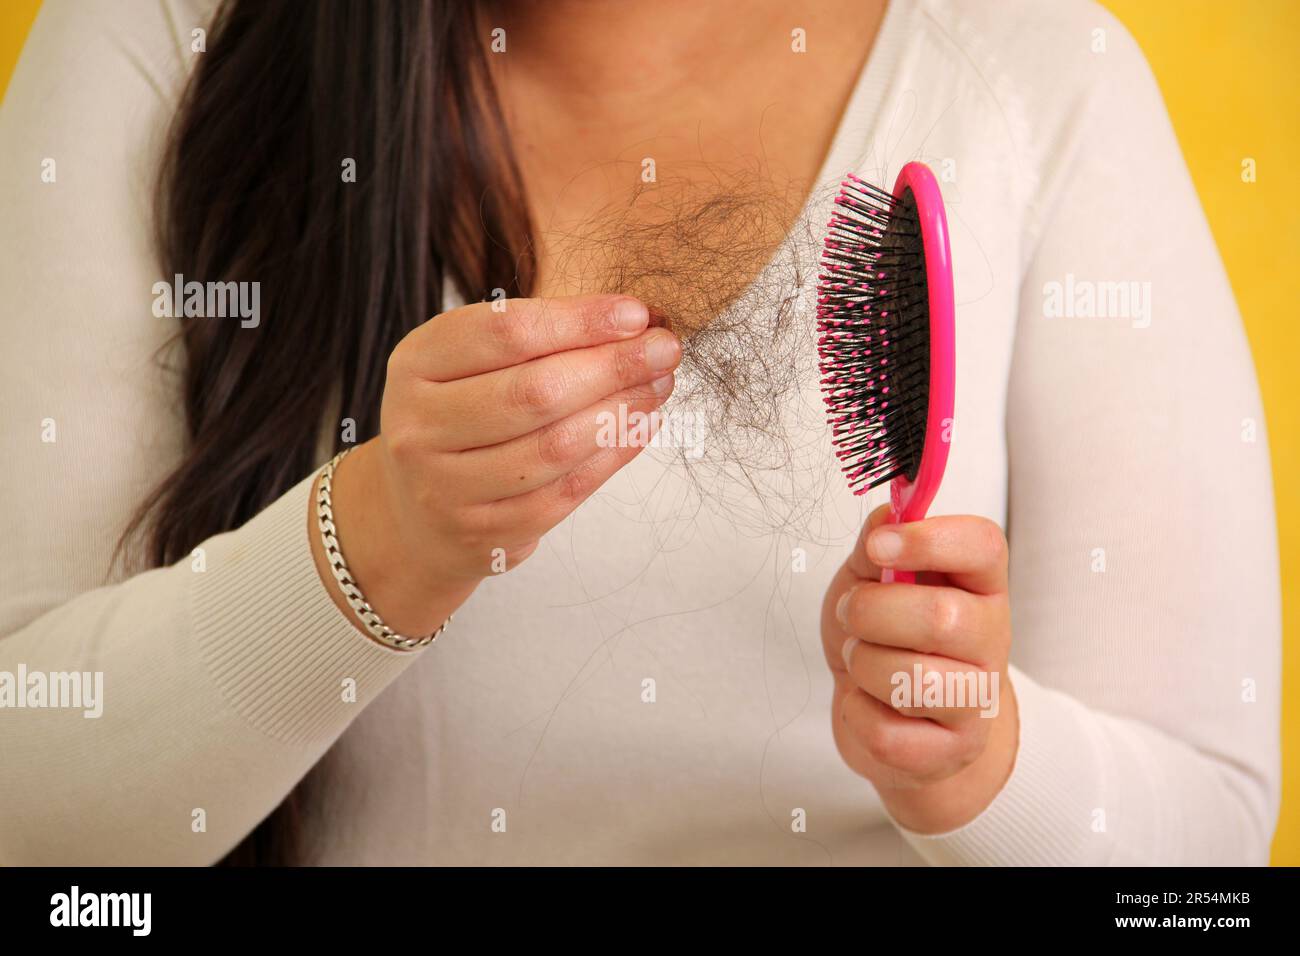 La femme de Latina adulte souffre de perte de cheveux lors du ...